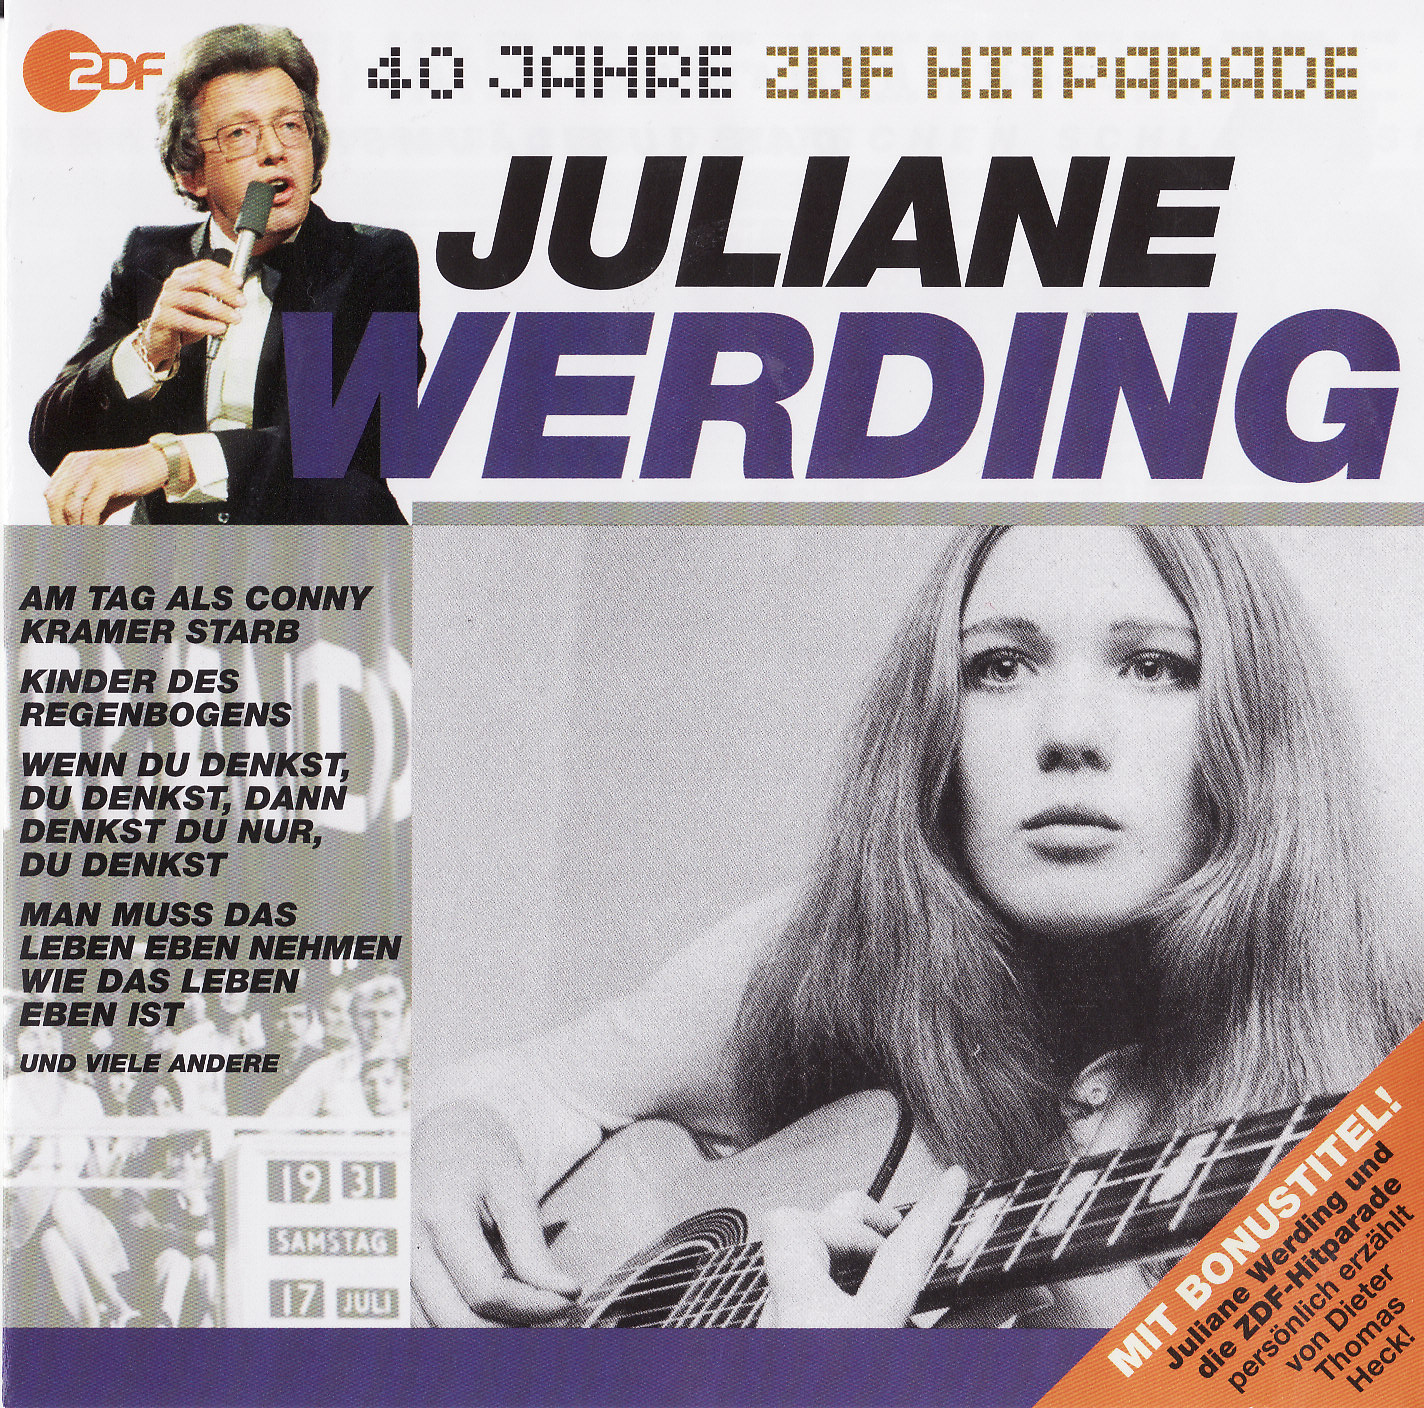 40 jahre ZDF Hitparade: Juliane Werding